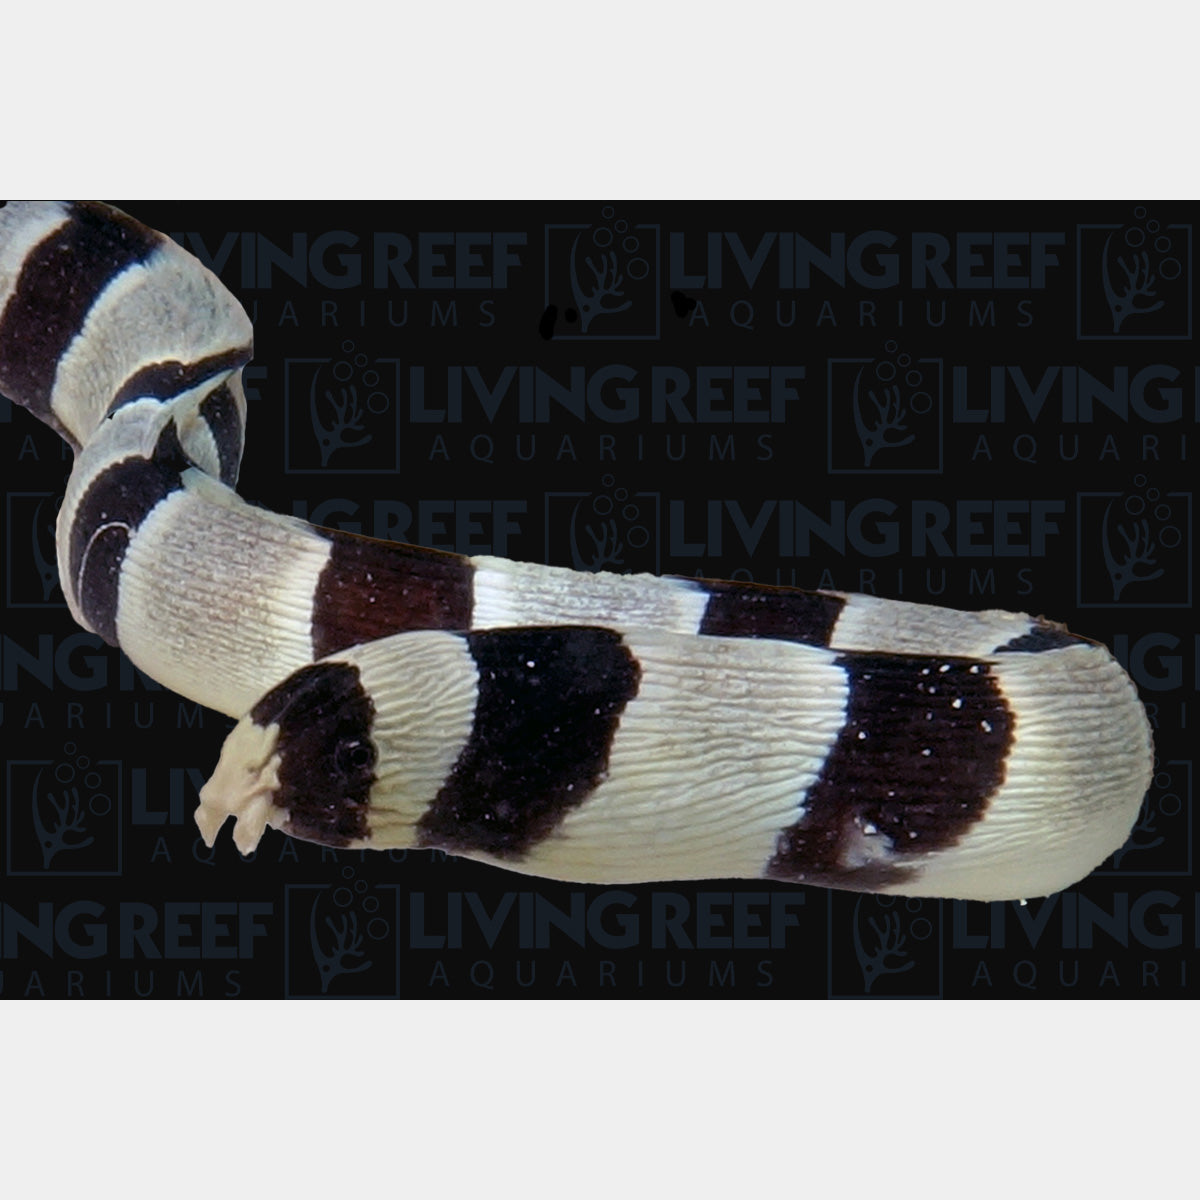 Harlequin Snake Eel